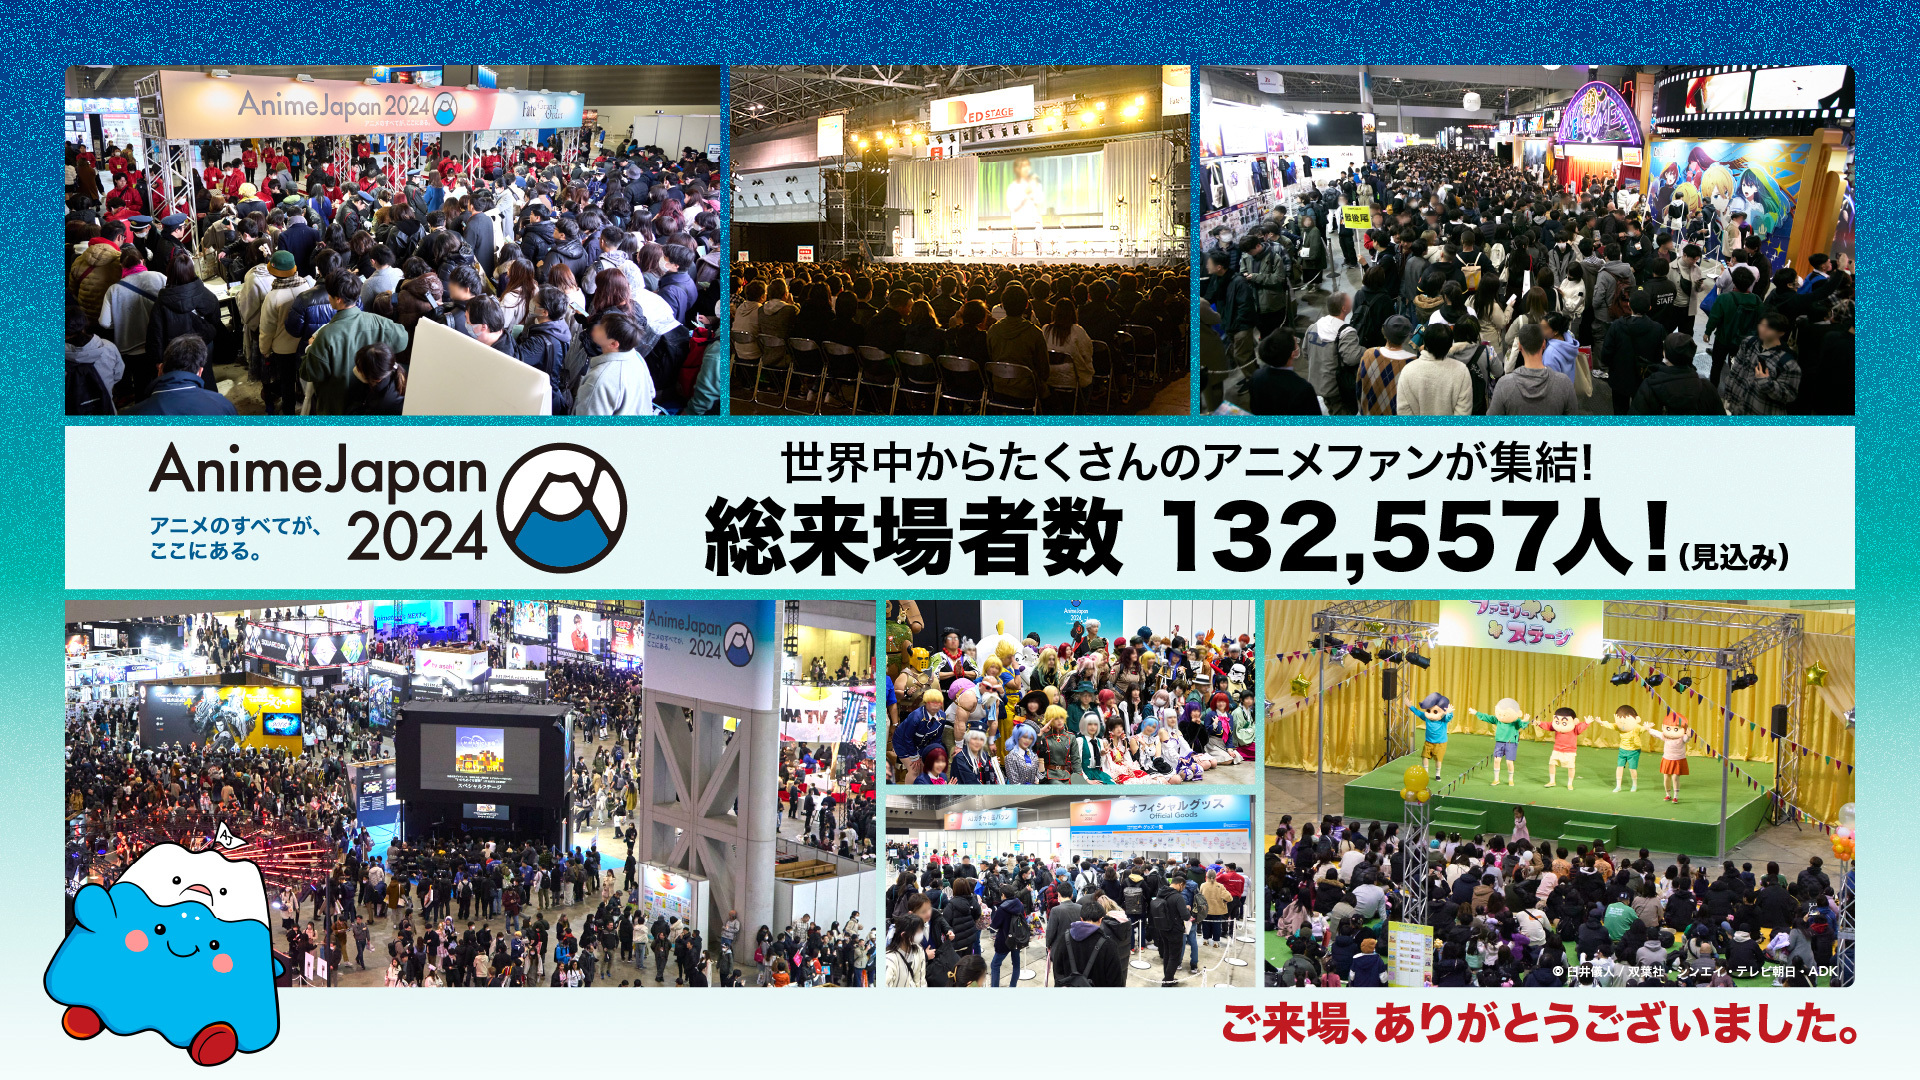 アニメのすべてが、ここにある。
「AnimeJapan 2024」
総来場者数 132,557人(見込み)！
さらなる進化を遂げるアニメの勢いを見せた2日間に。
2025年3月、次回開催が決定！